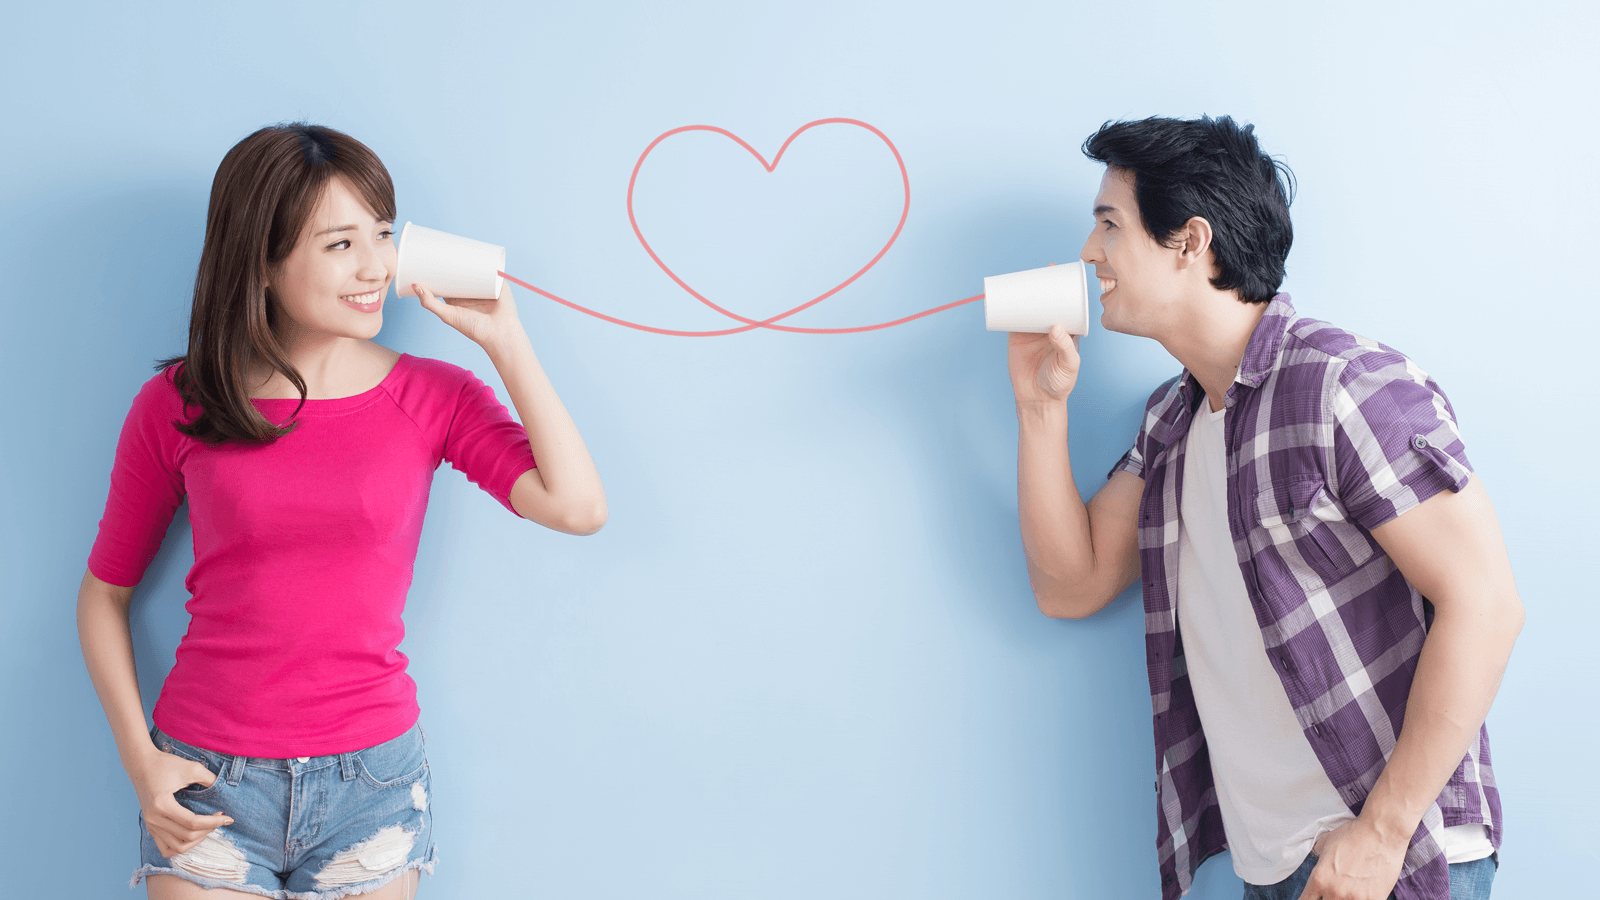 Theo kết quả nghiên cứu, các cặp đôi sống chung không kết hôn cảm thấy ít hài lòng với mối quan hệ của mình hơn các cặp đôi kết hôn.